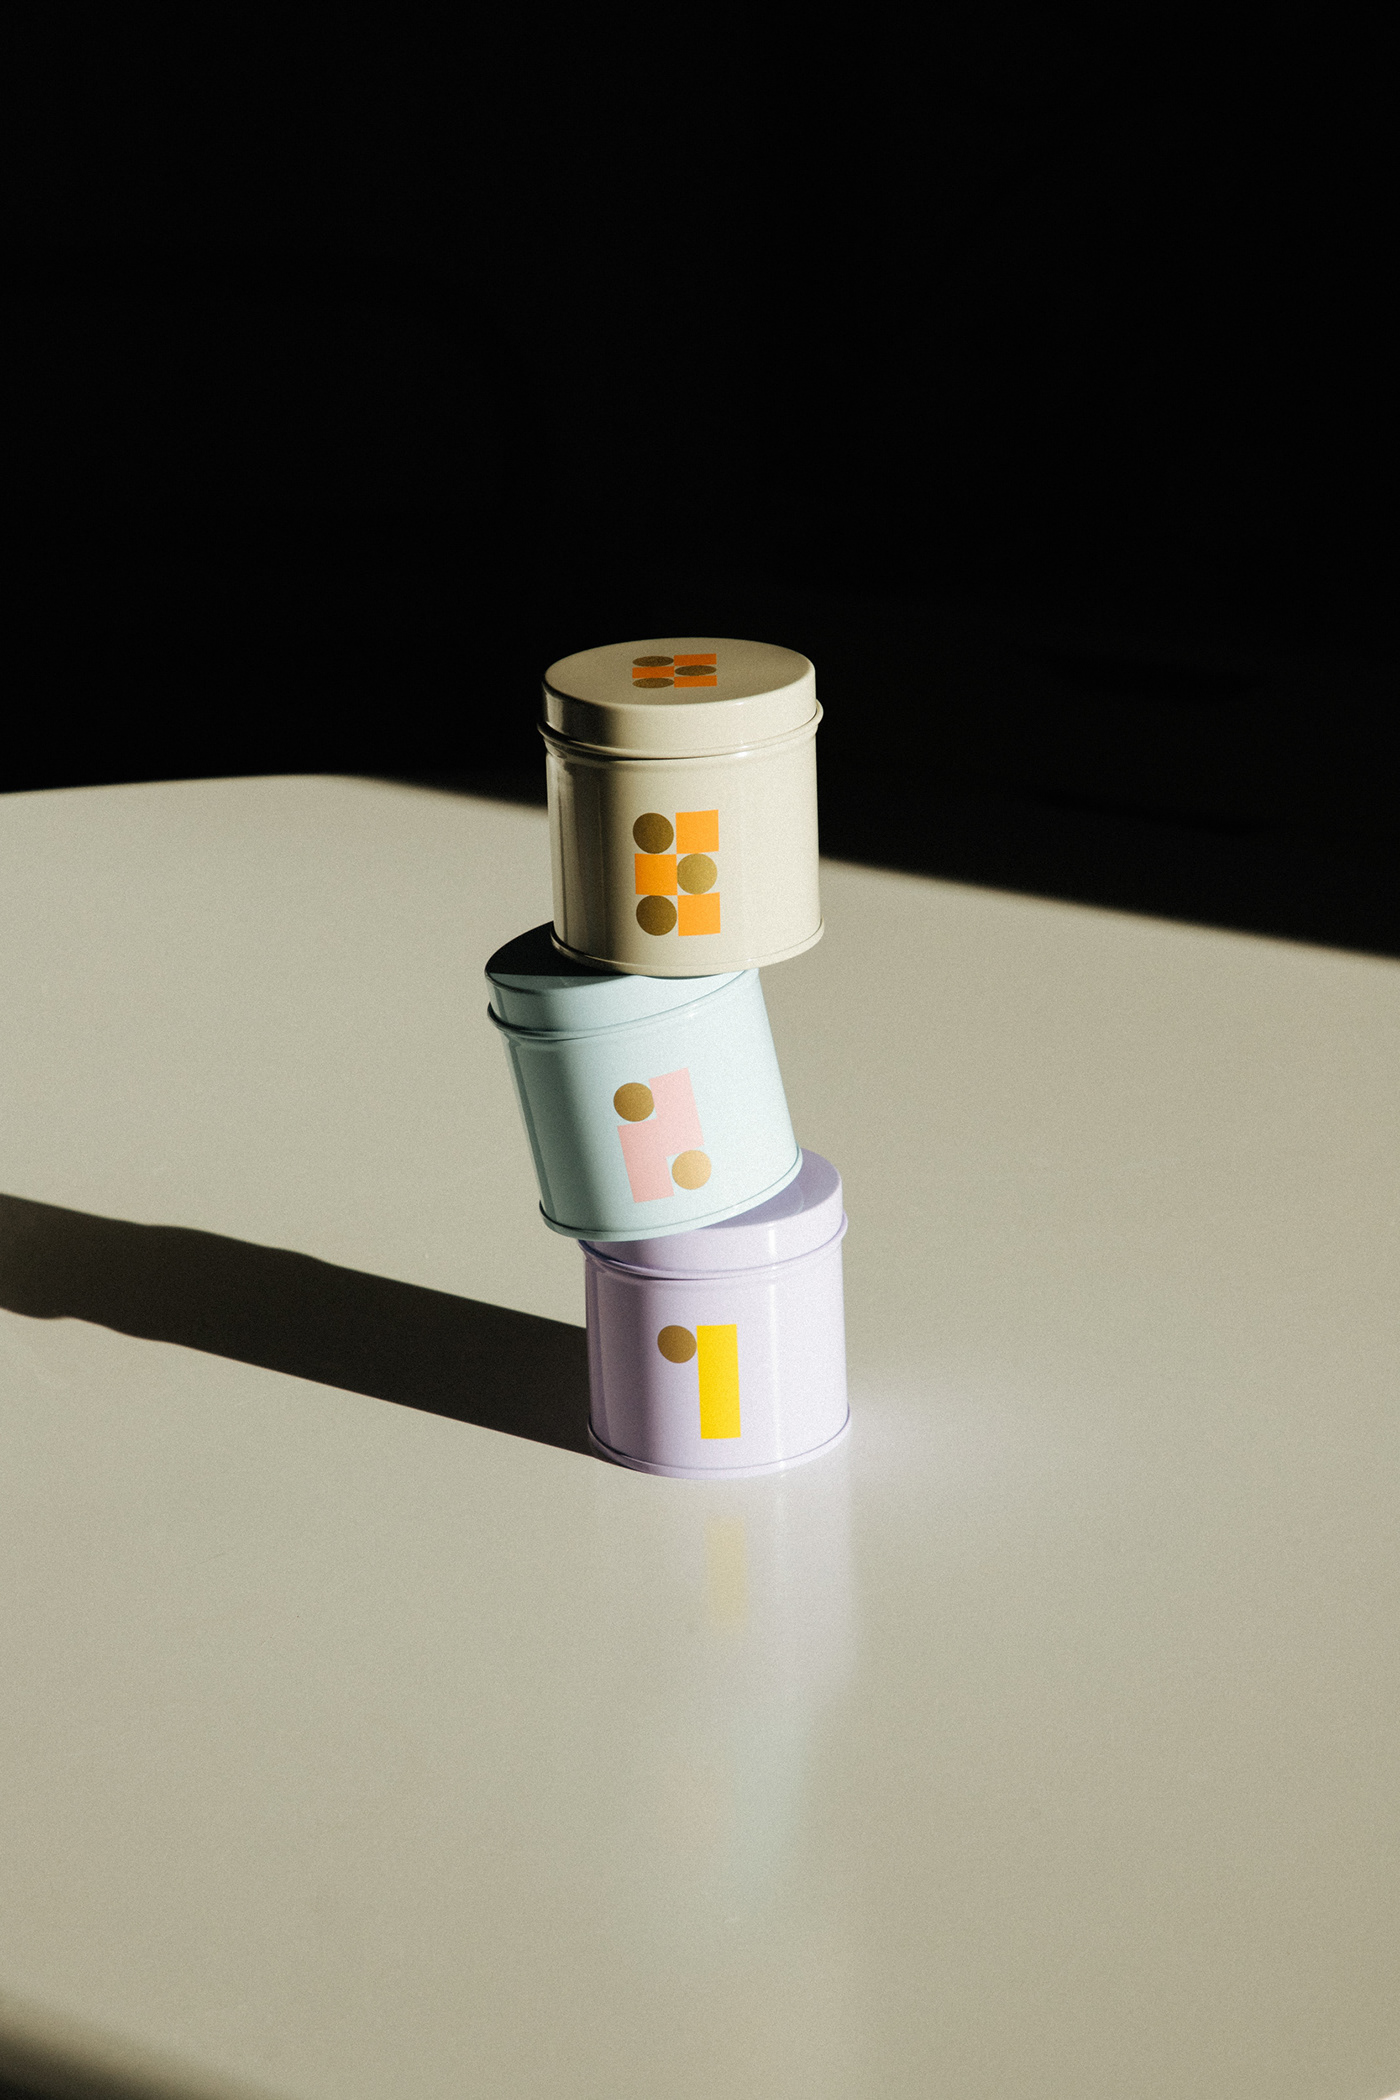 全新的视觉体验茶叶产品包装设计作品，Tres茶叶包装设计。